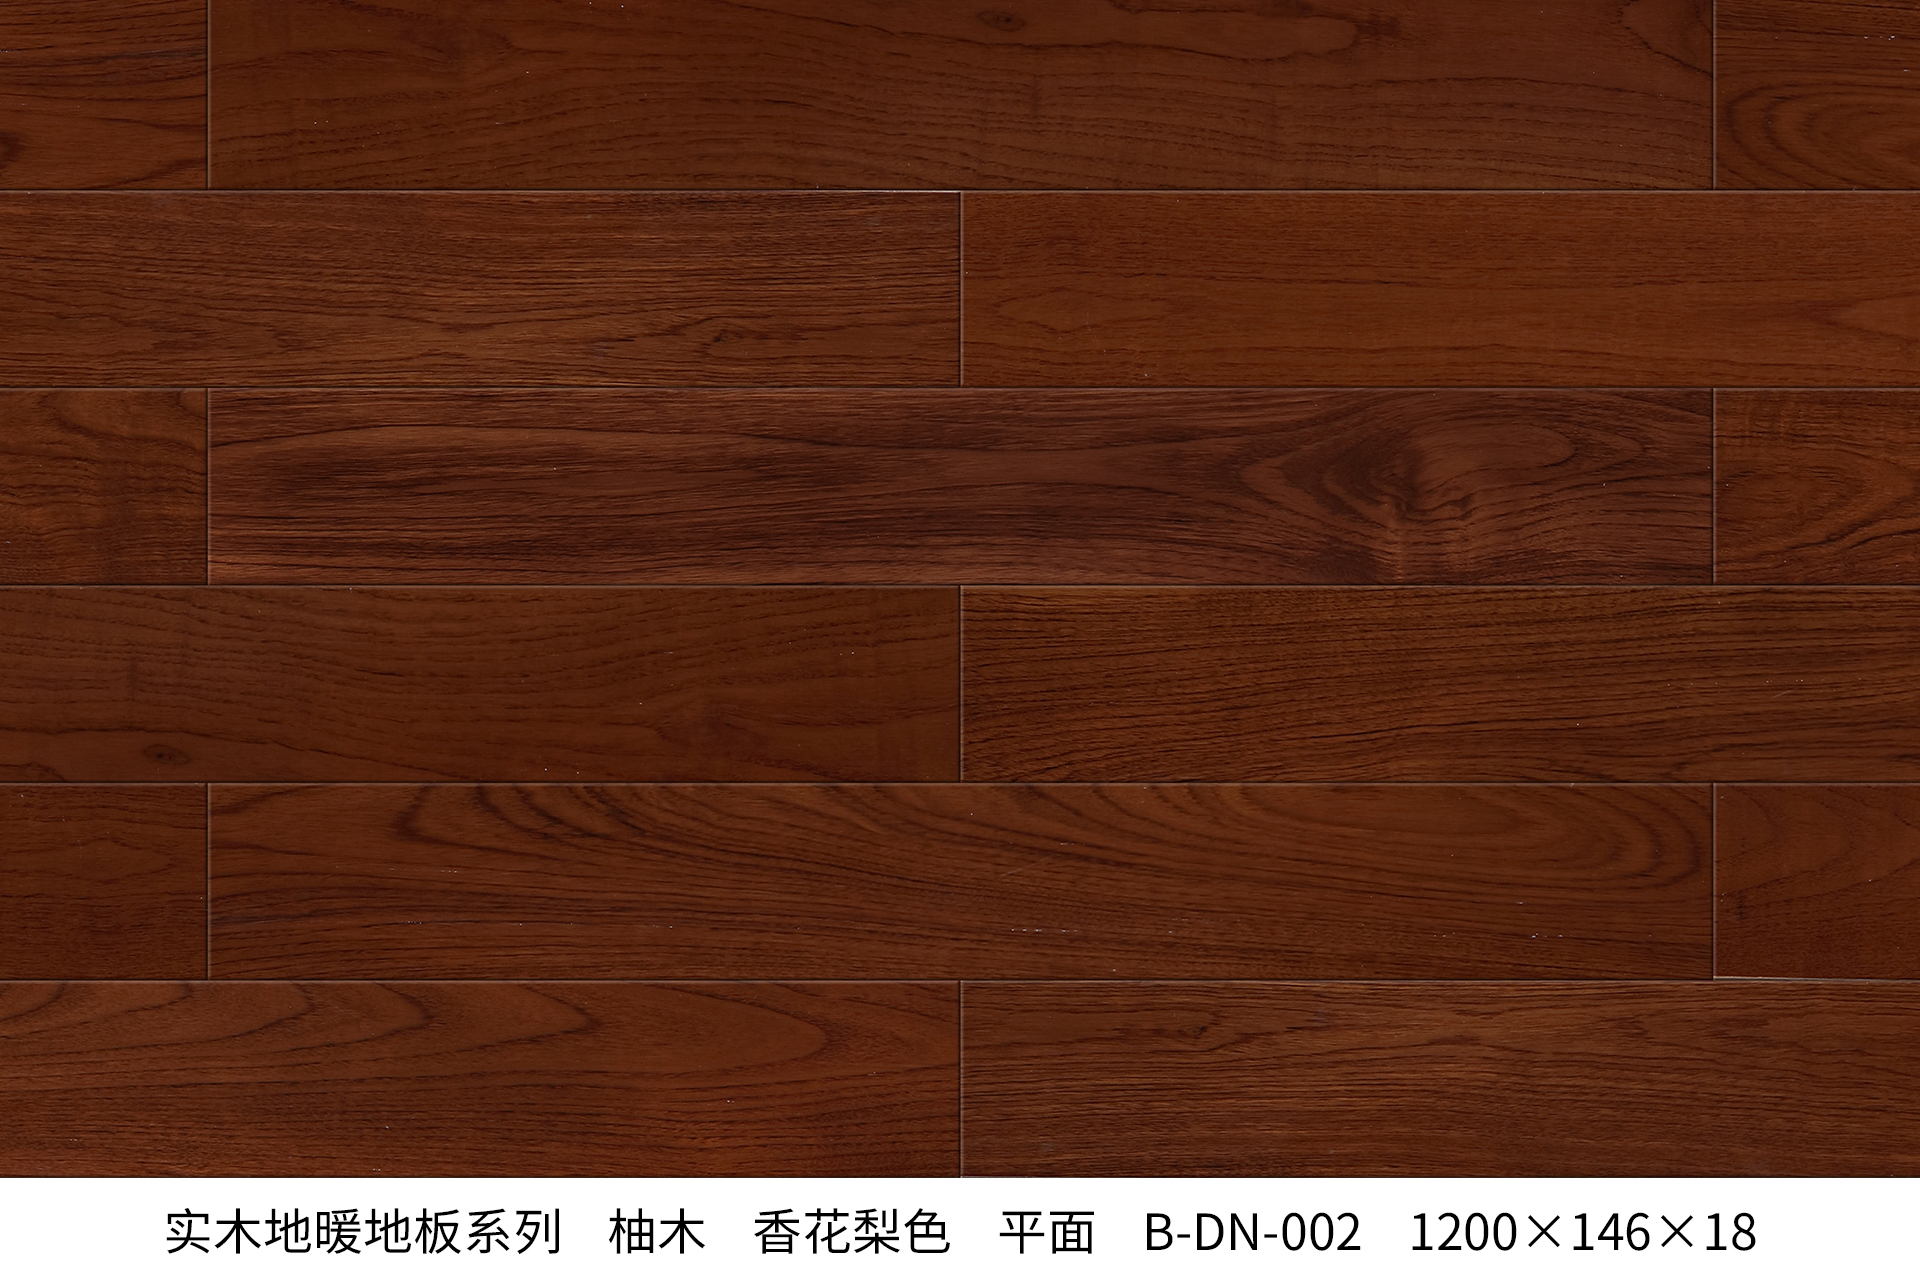 B-DN-113_实木地暖地板_产品中心_永吉地板官网